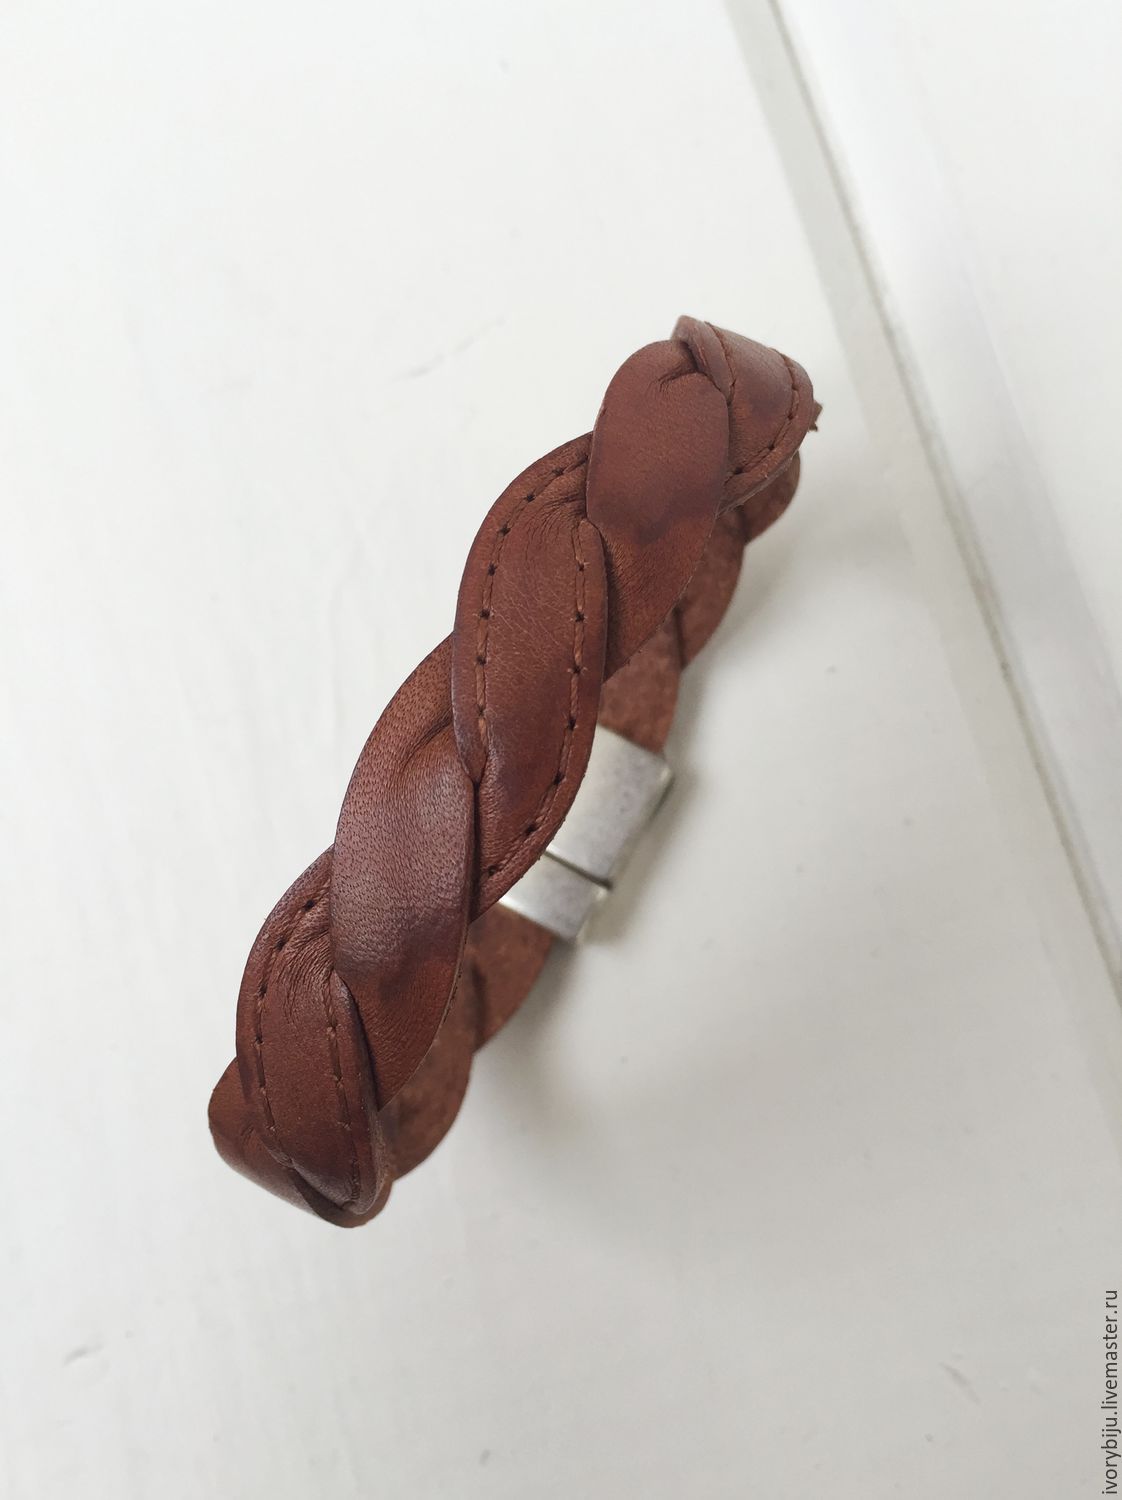 Мужской кожаный браслет из двух скрученных шнуров, коричнево-рыжий